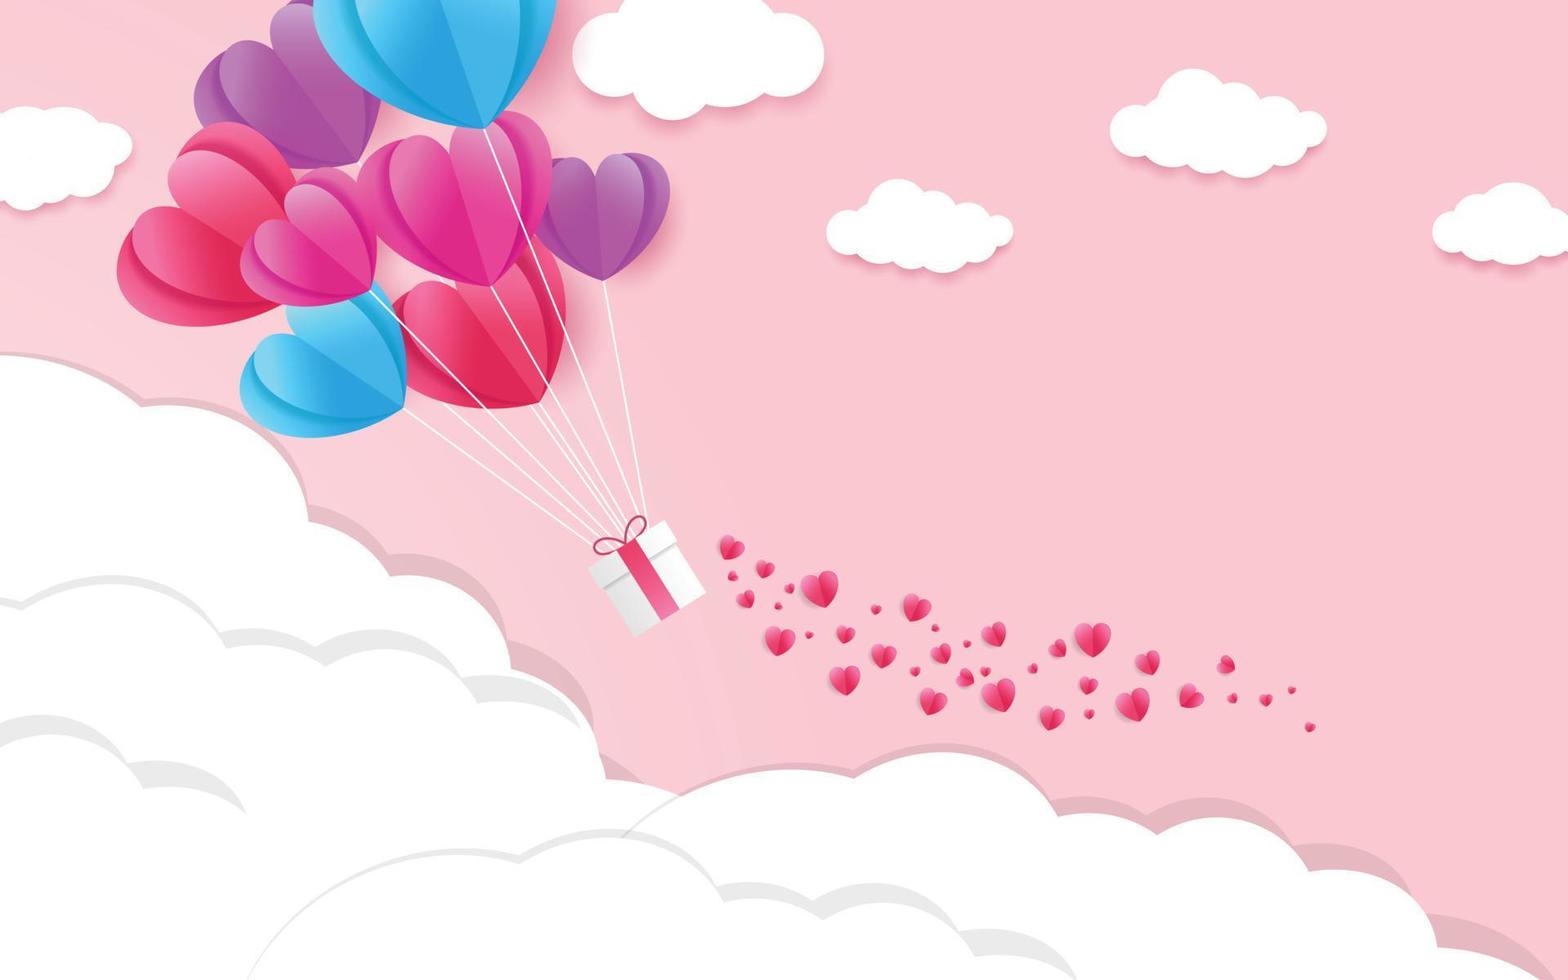 illustratie van liefde en valentijnsdag met hartballon, cadeau en wolken. papier gesneden stijl. vector illustratie